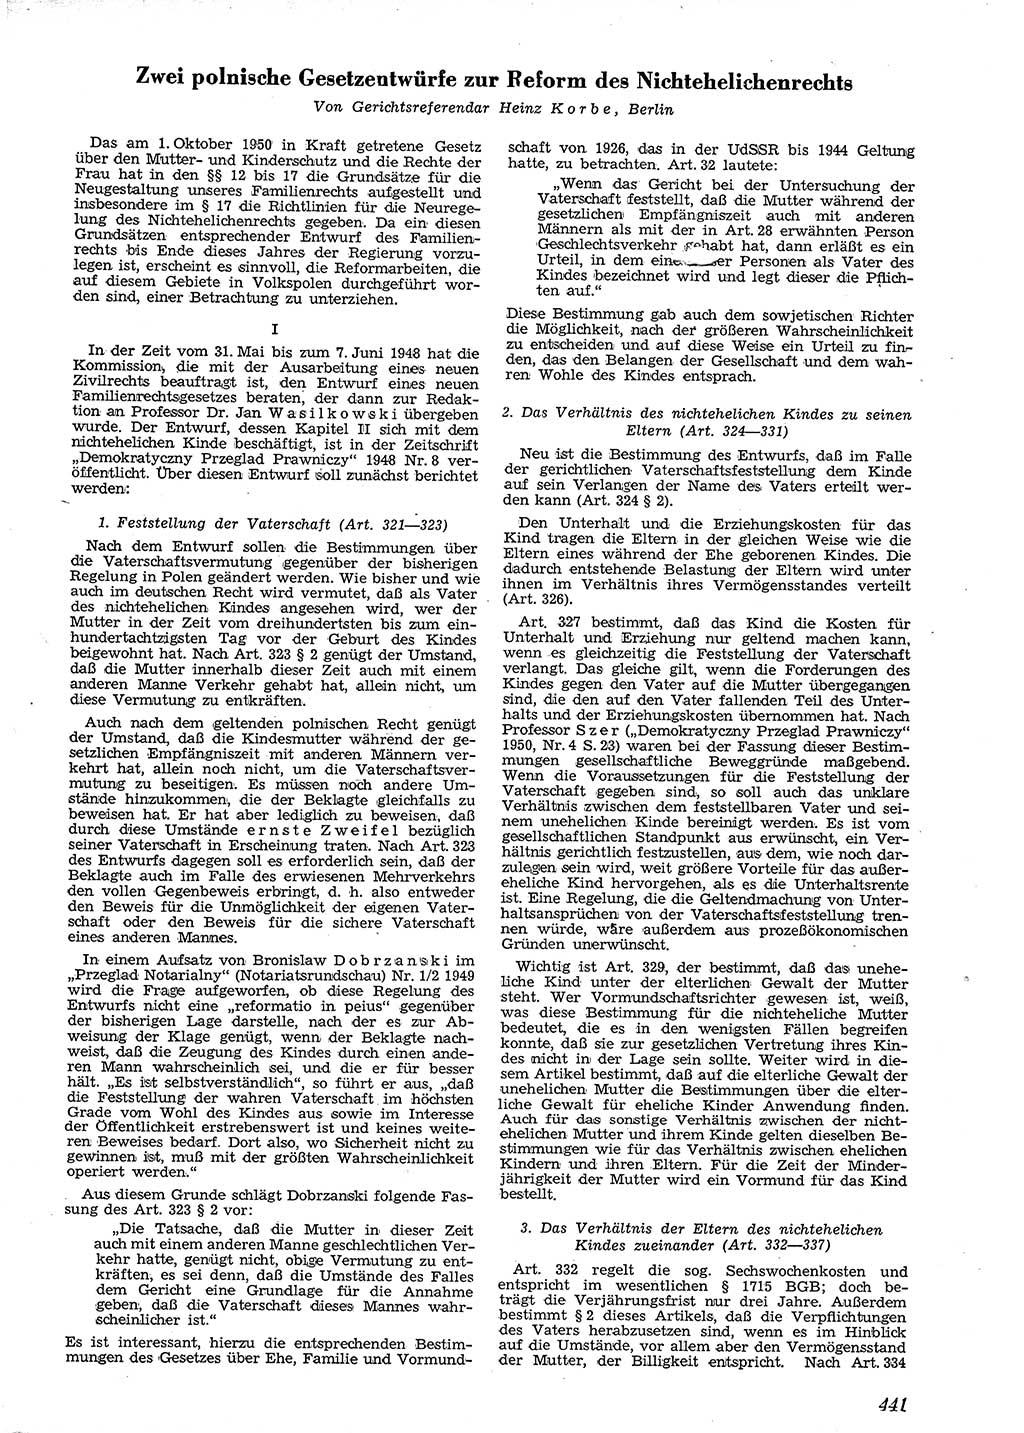 Neue Justiz (NJ), Zeitschrift für Recht und Rechtswissenschaft [Deutsche Demokratische Republik (DDR)], 4. Jahrgang 1950, Seite 441 (NJ DDR 1950, S. 441)